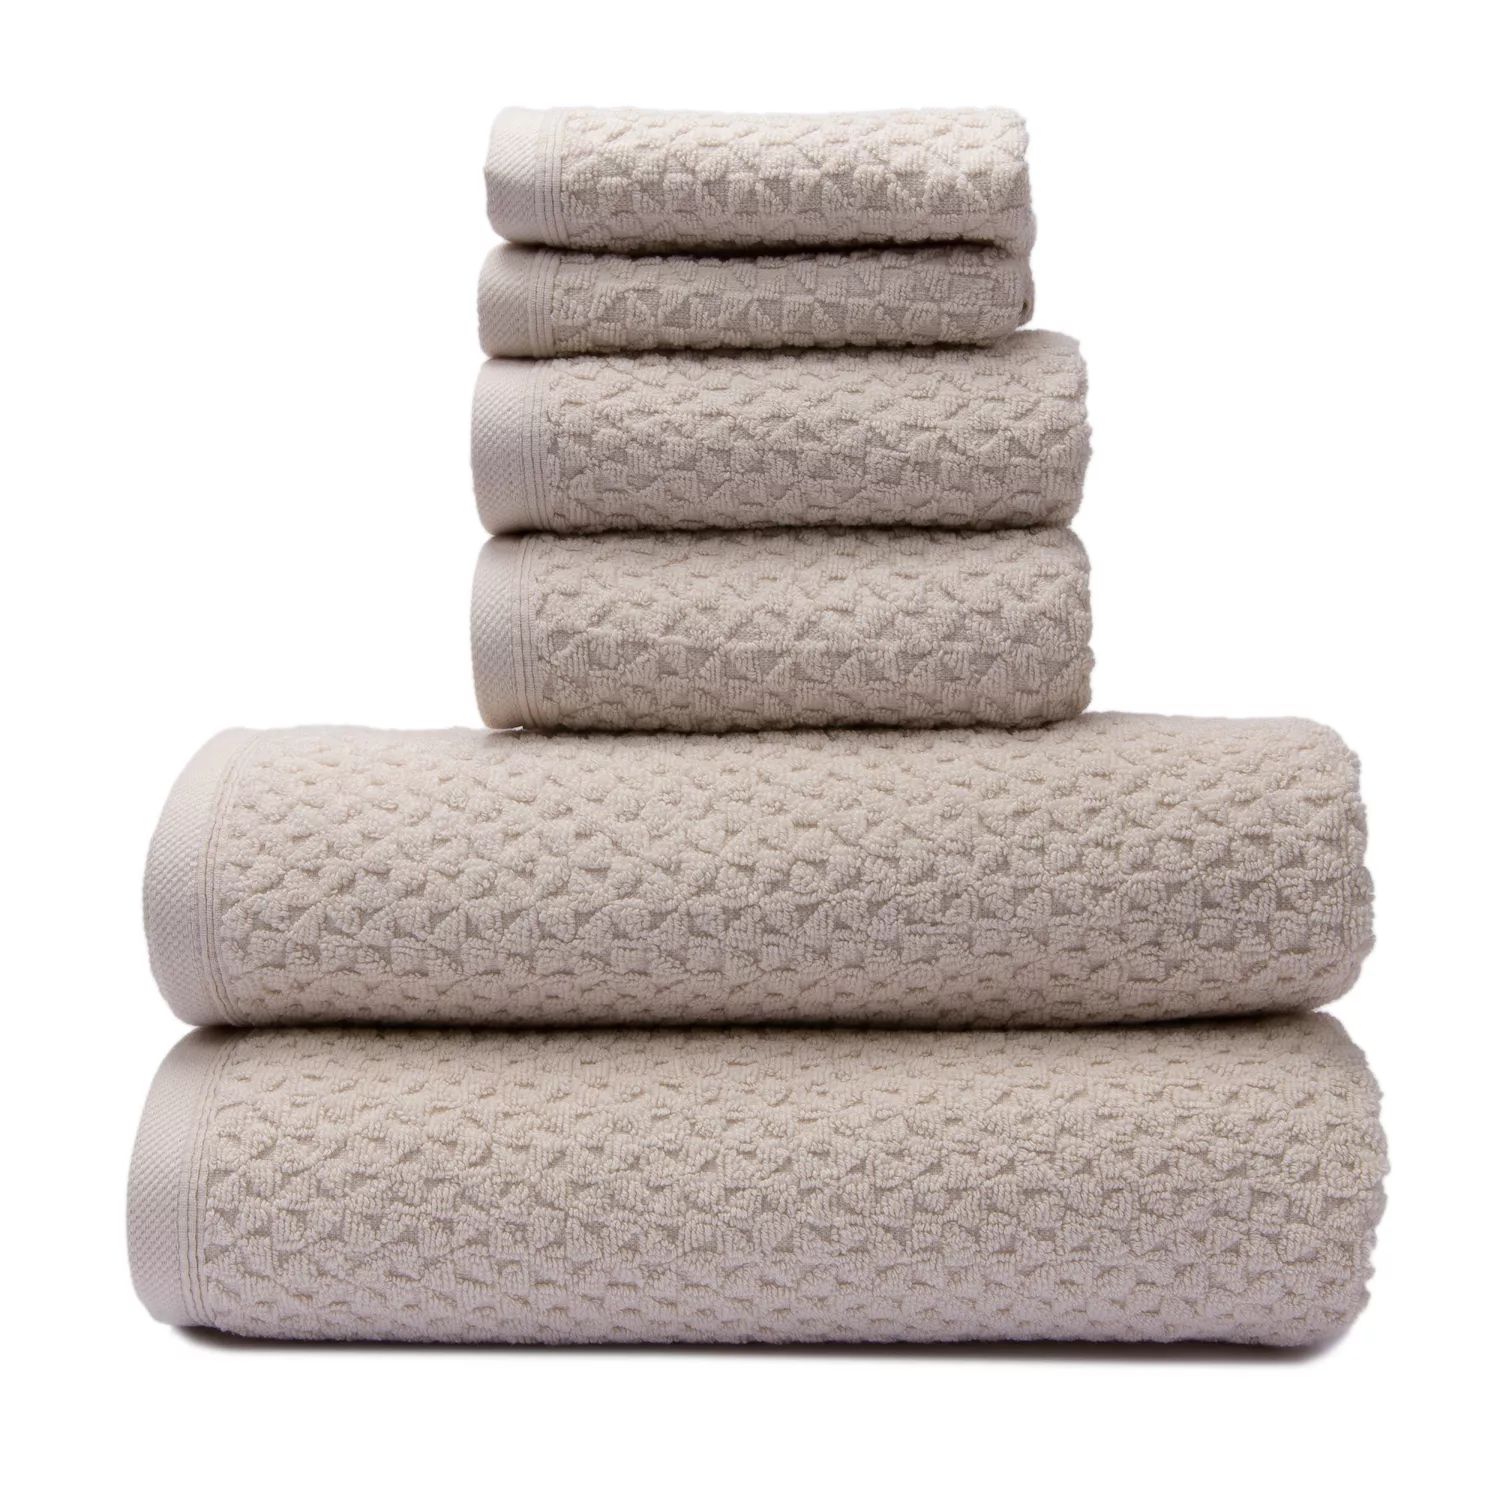 Классические турецкие полотенца из натурального хлопка с мягкой впитывающей способностью, жаккардовый жаккард Lucia Minelli, набор из 6 предметов: 2 банных полотенца, 2 полотенца для рук, 2 мочалки, серый